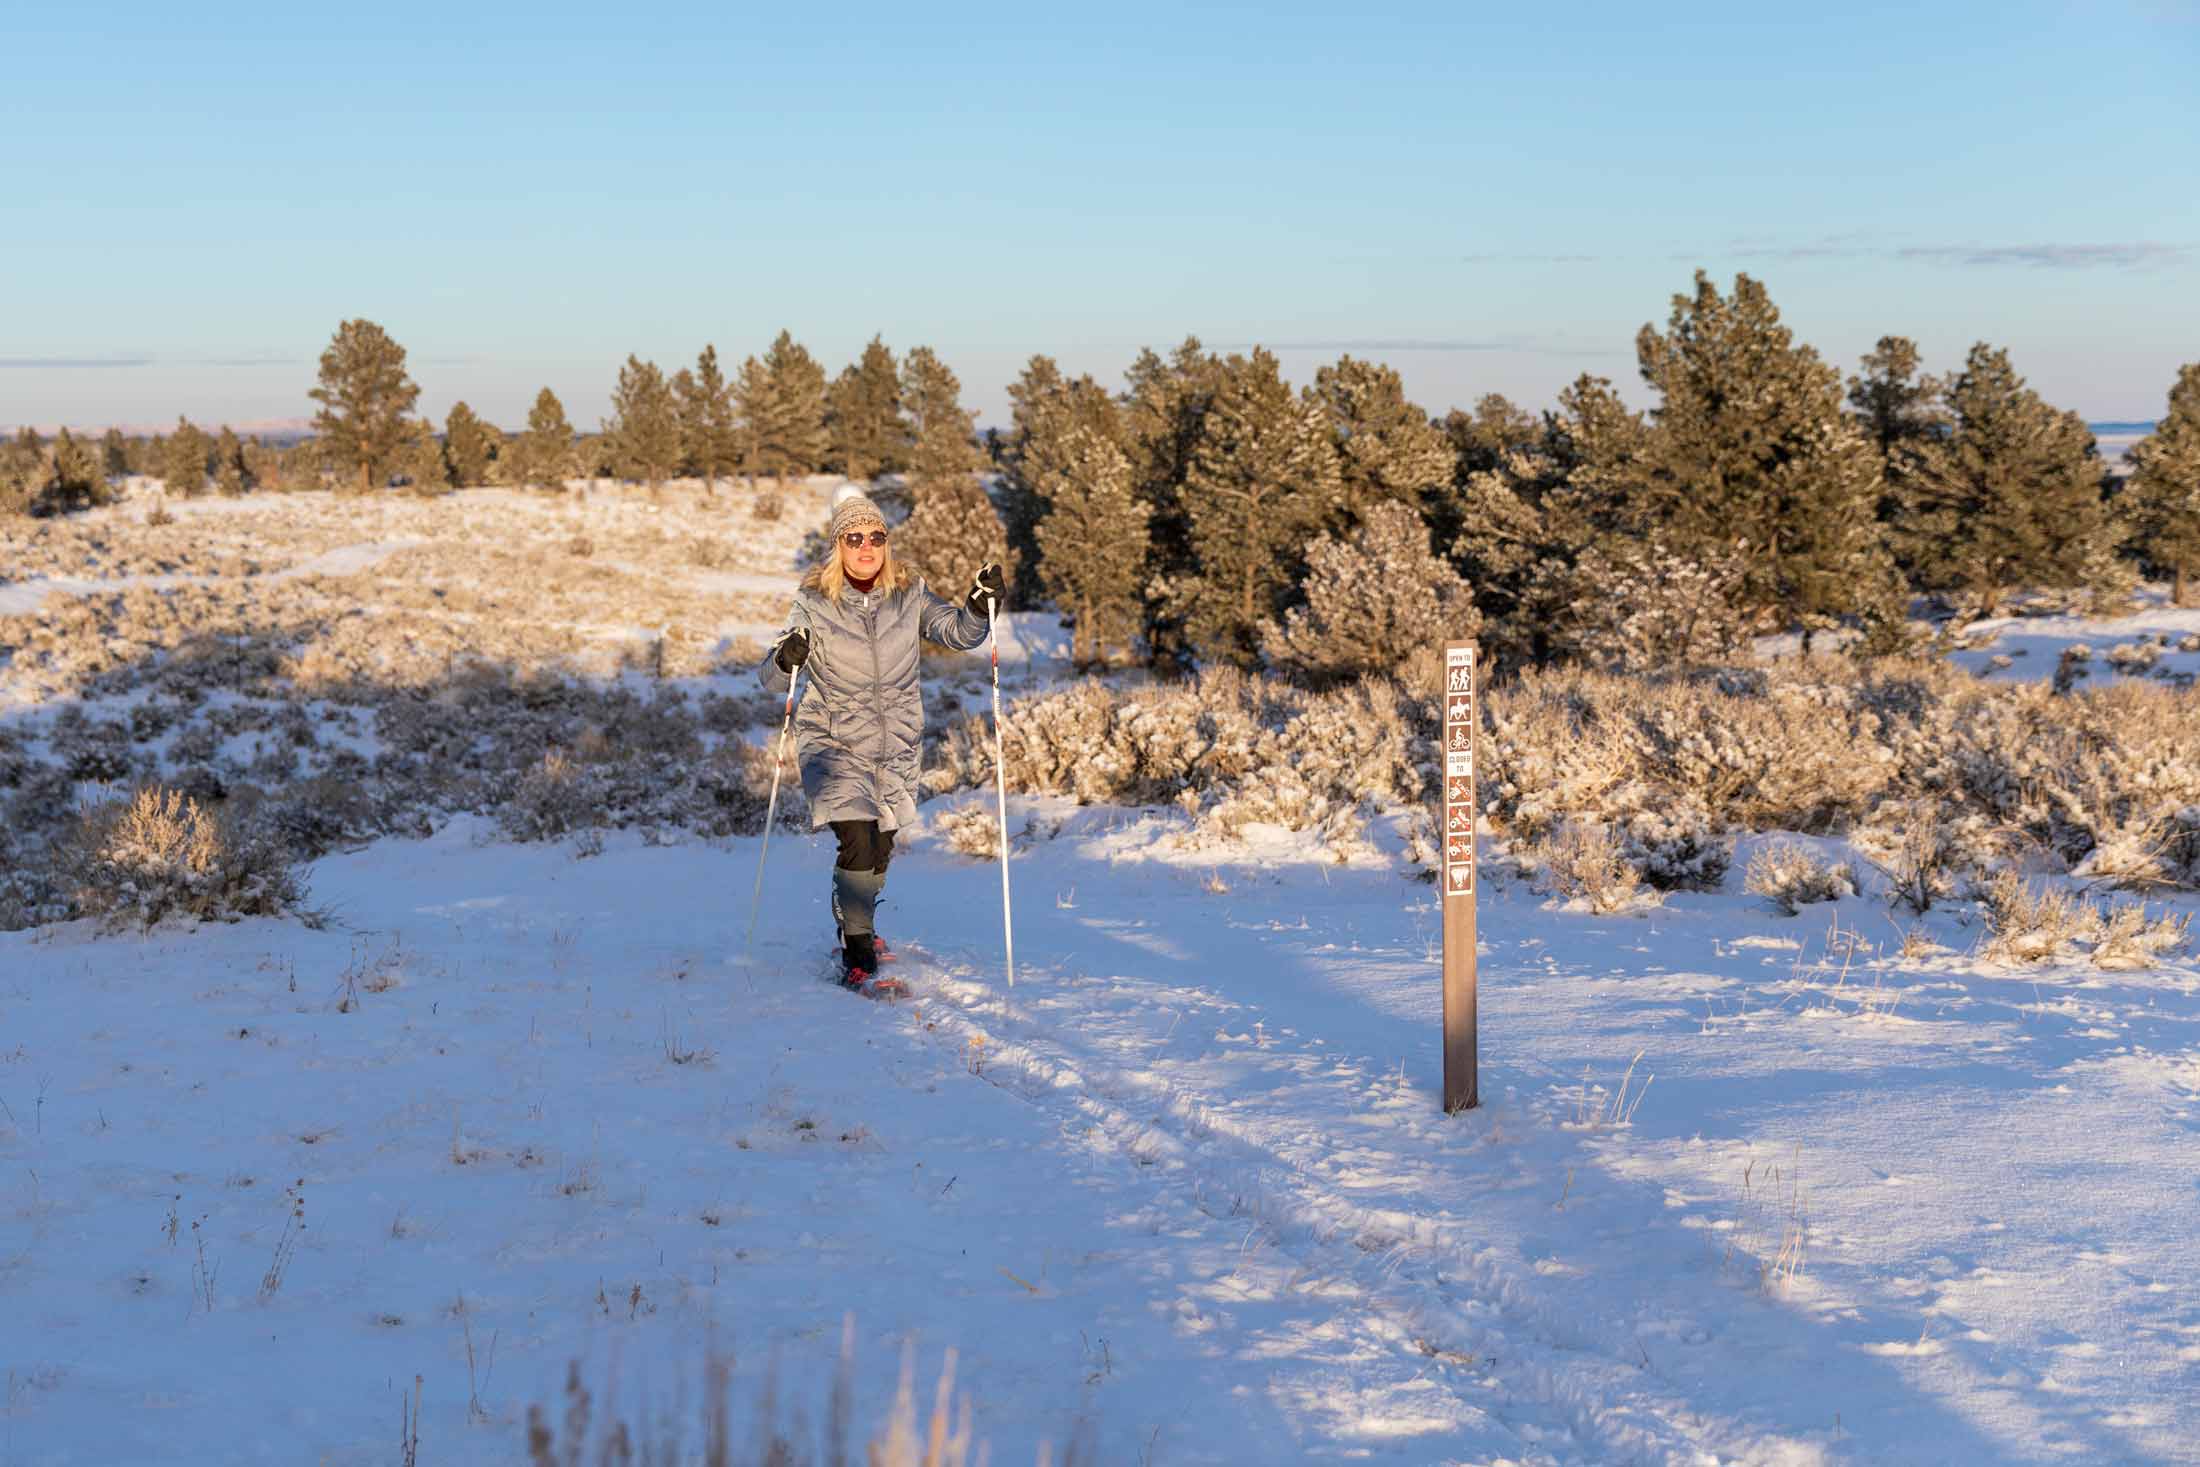 Winter Outdoor Activities in Southeast Montana